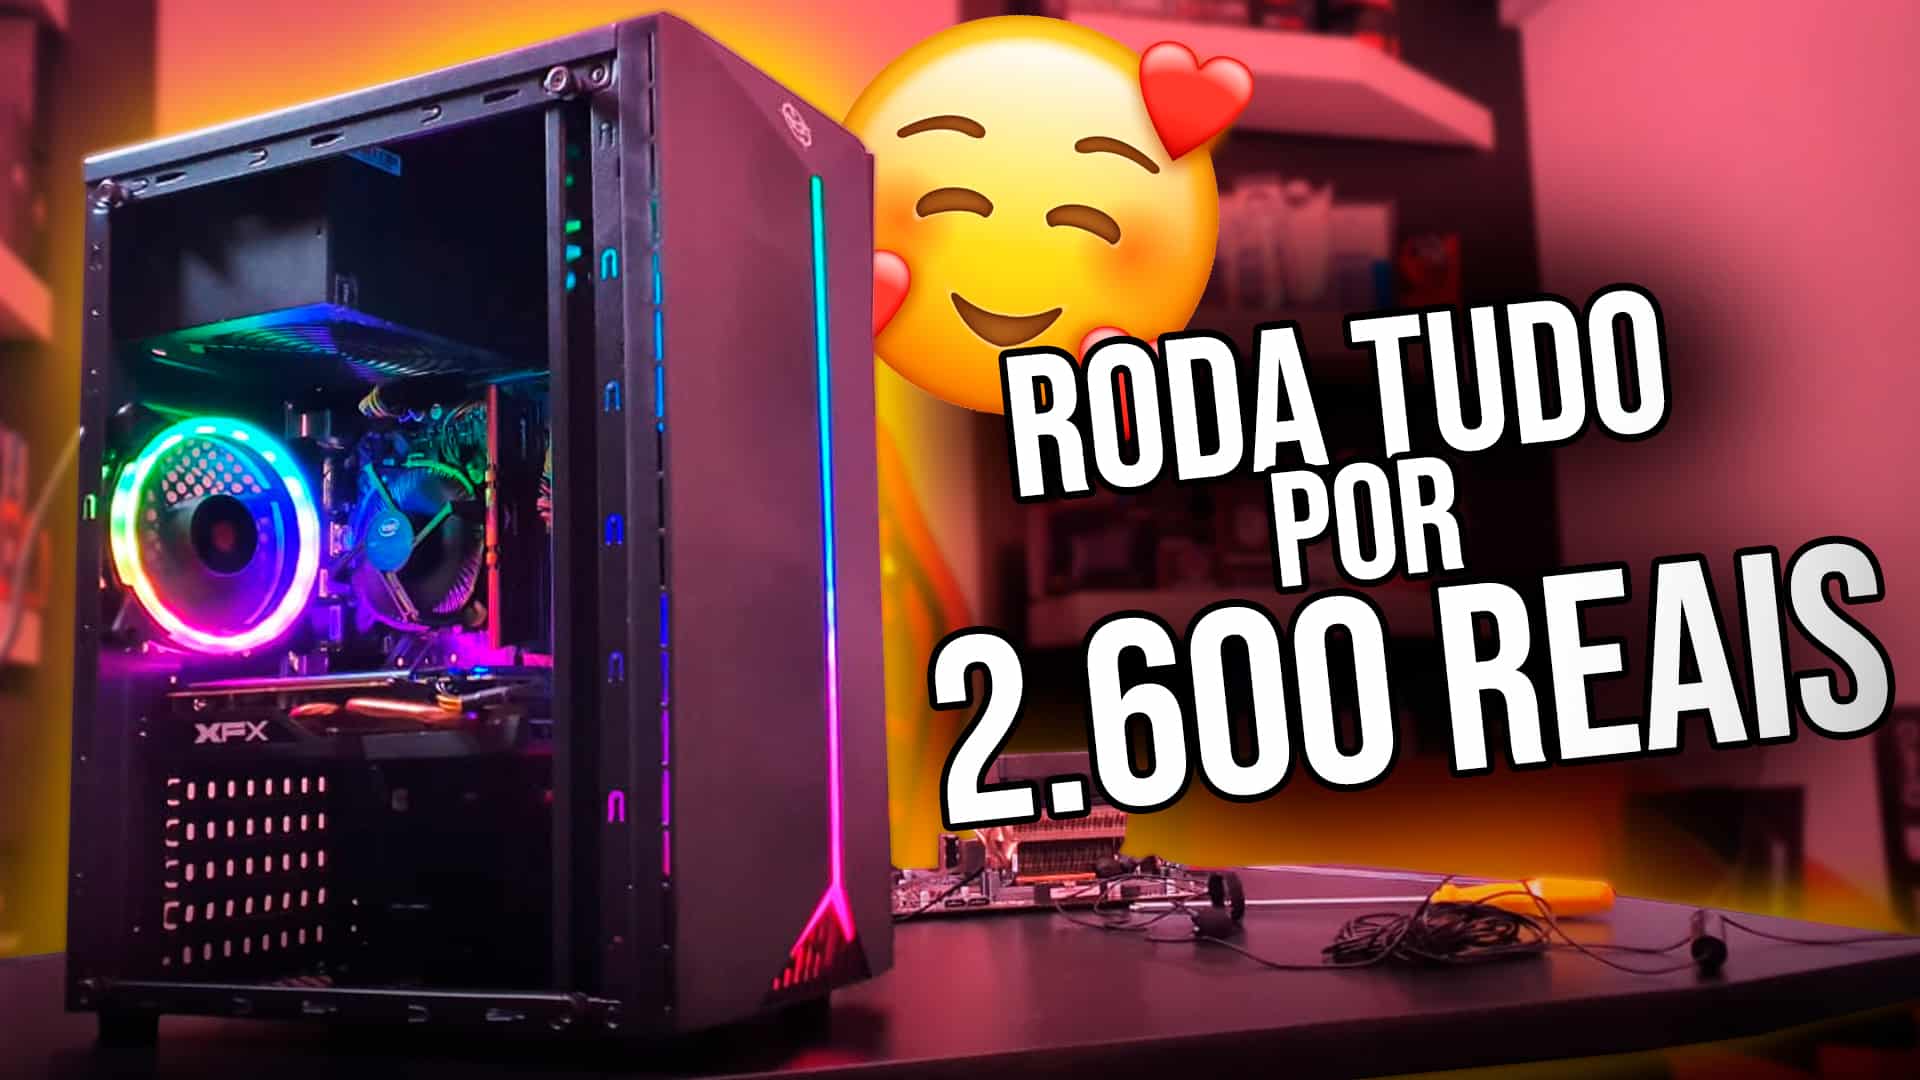 PC Gamer IDEAL que roda TUDO por 2600 Reais Janeiro 2020 - Pichau Arena